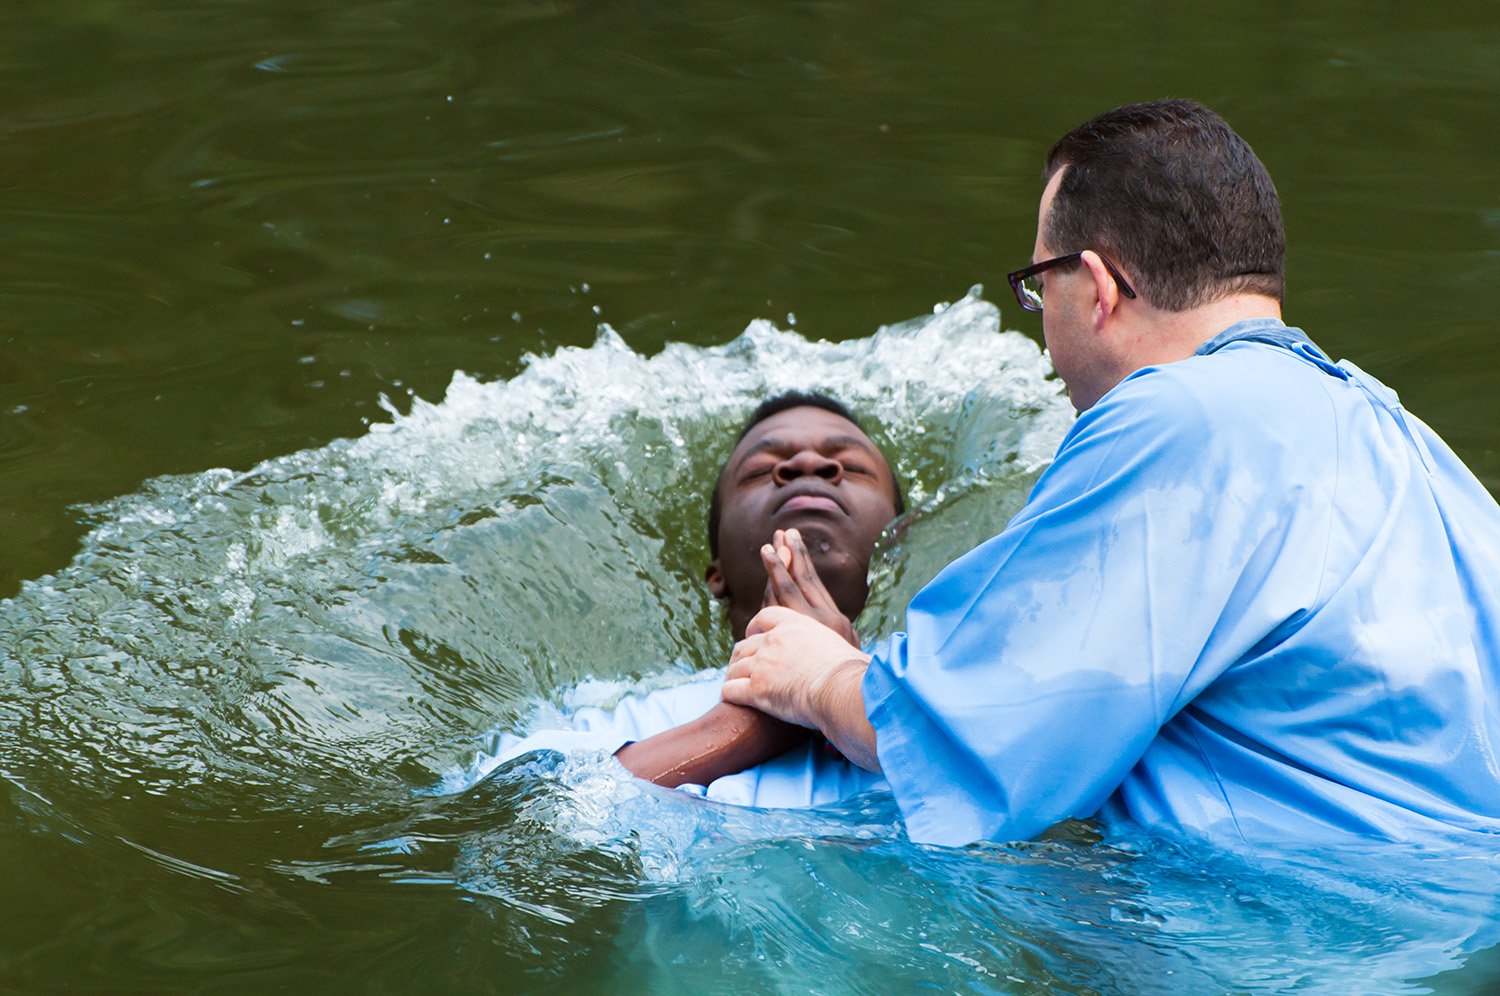 El bautismo por los muertos - Noticias - Adventistas